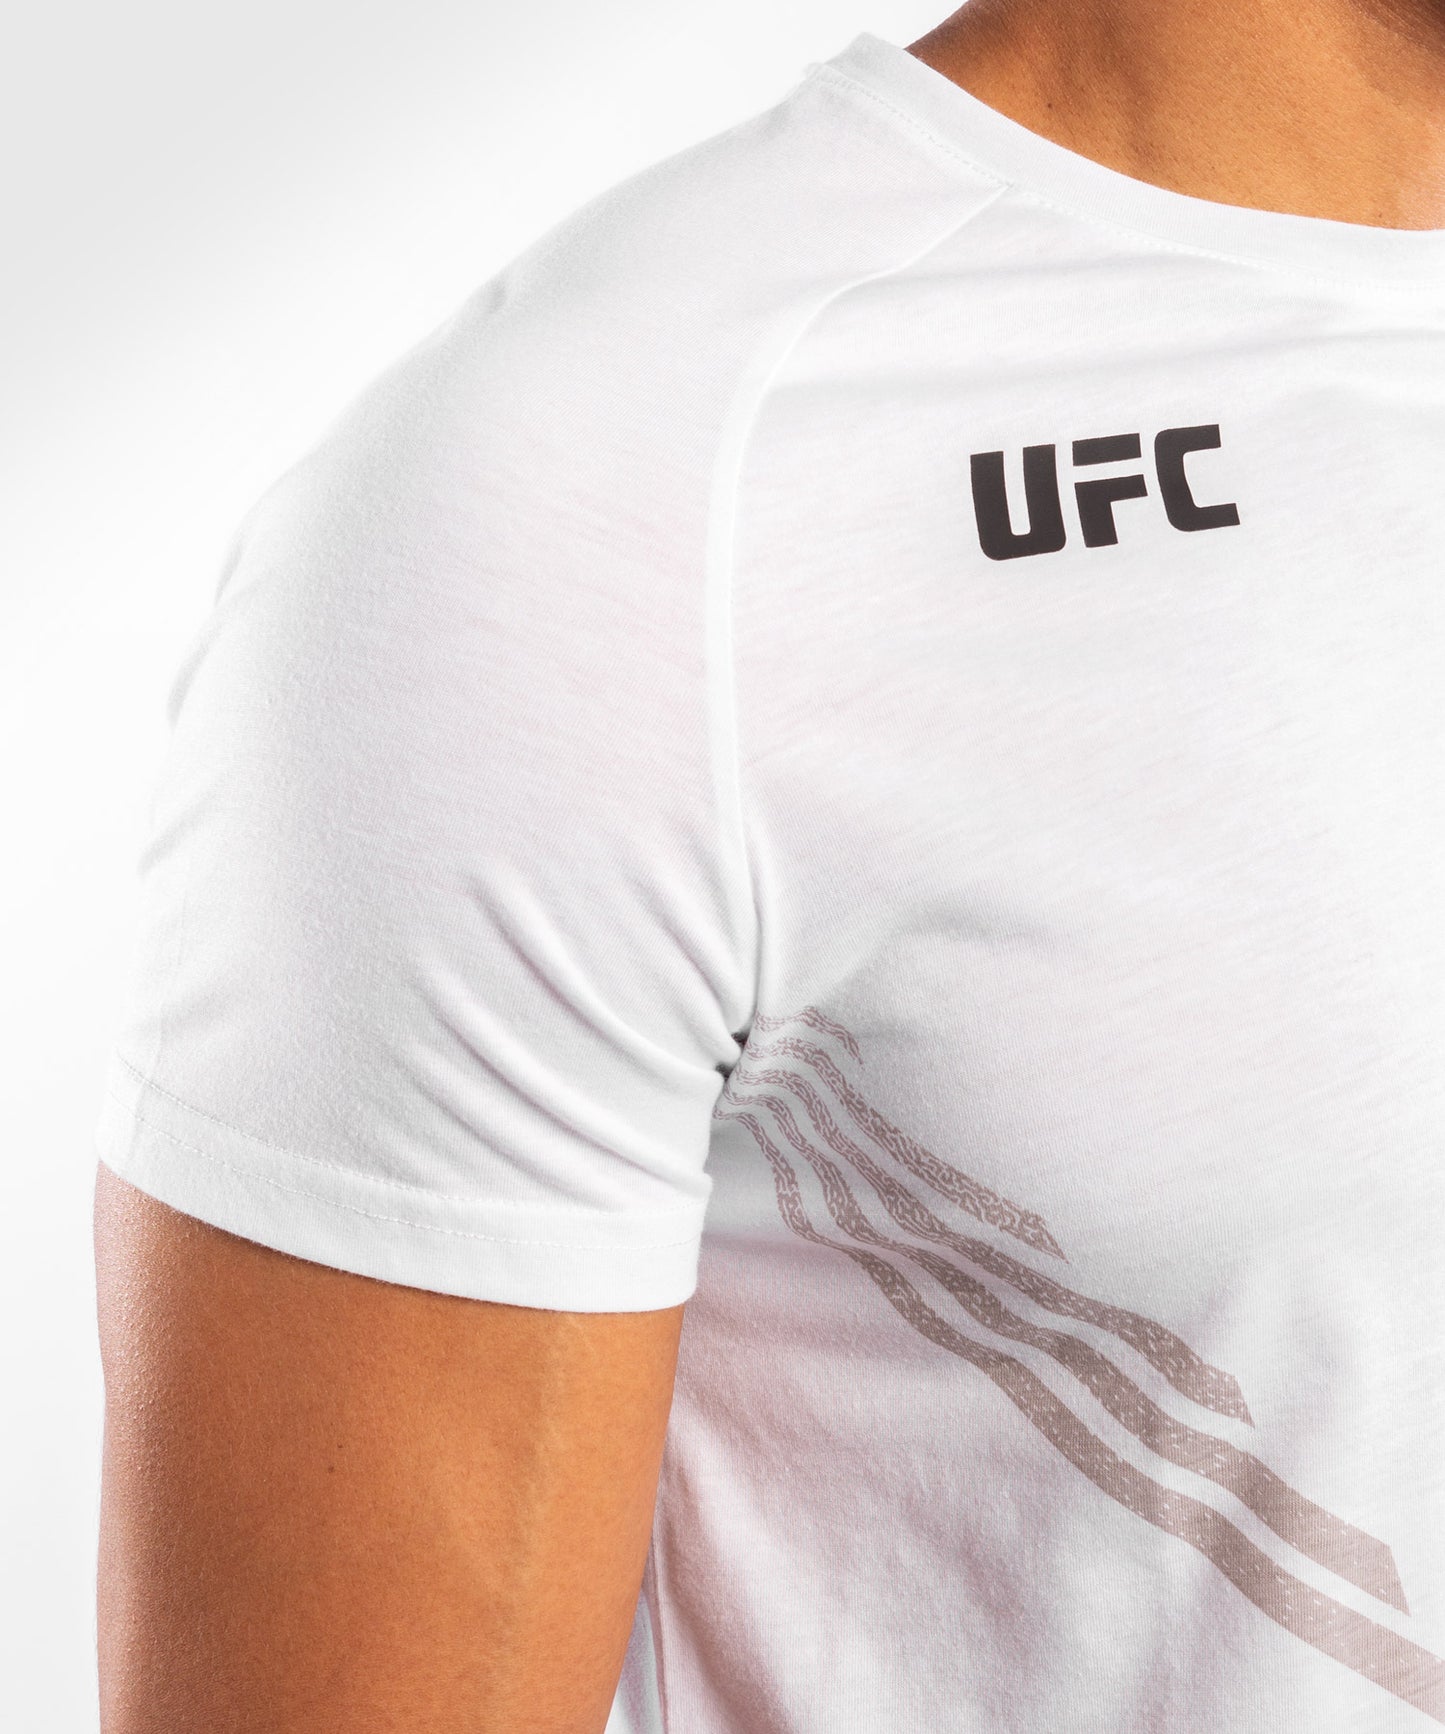 UFC Venum Replica Men's Jersey - White